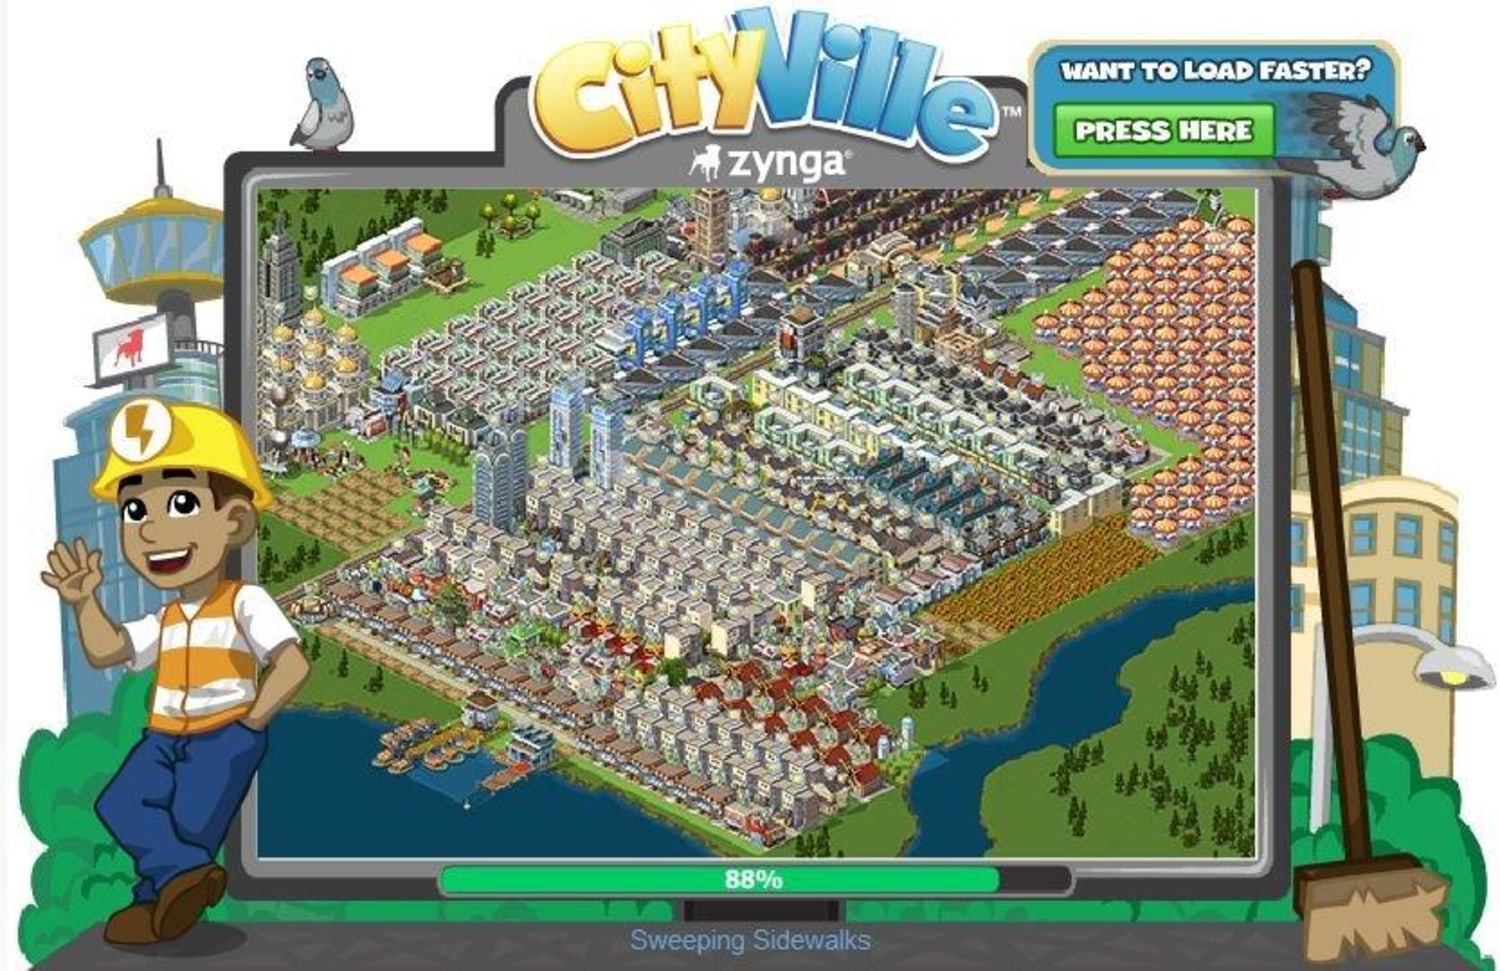 Jogos no facebook, dicas e comentários (cityville, city of wonder